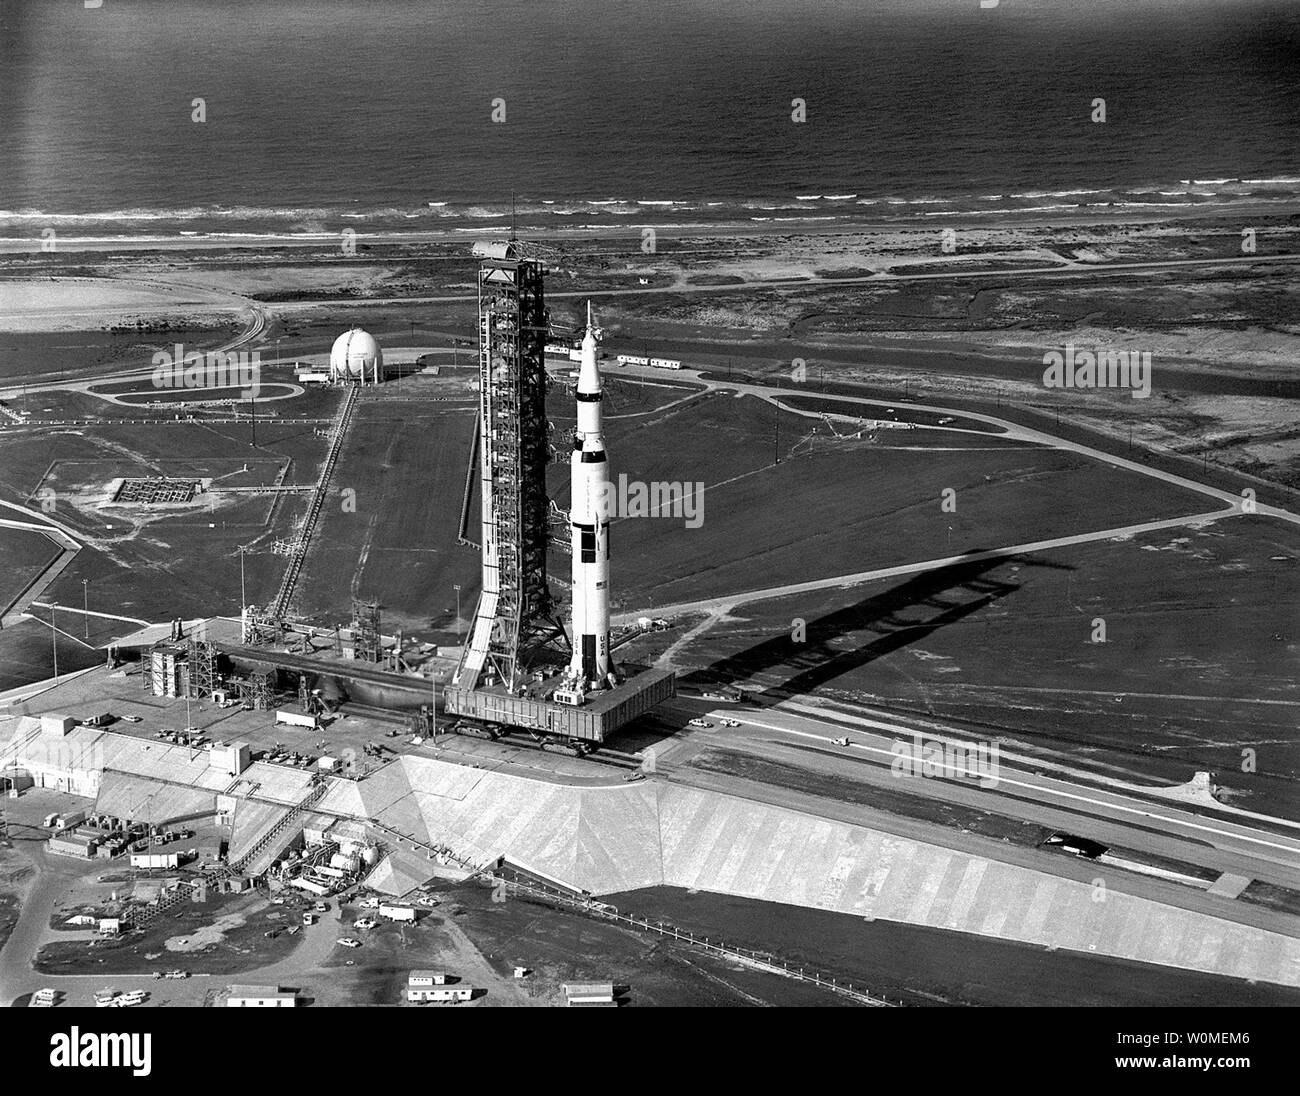 Il Transporter sposta l'Apollo 11 Saturn V in luogo a complessi di lancio 39A al Kennedy Space Center, Florida il 20 maggio 1969. La NASA segna il quarantesimo anniversario della missione Apollo 11 per la Luna e la prima storica 'moonwalk' quest'anno. Durante otto giorni di missione spaziale, Armstrong e Aldrin esplorato la superficie della Luna e portò i campioni di roccia per gli scienziati per studiare. Collins pilotato il modulo di comando in orbita lunare durante il loro 22 ore di permanenza sulla luna. (UPI foto/NASA) Foto Stock